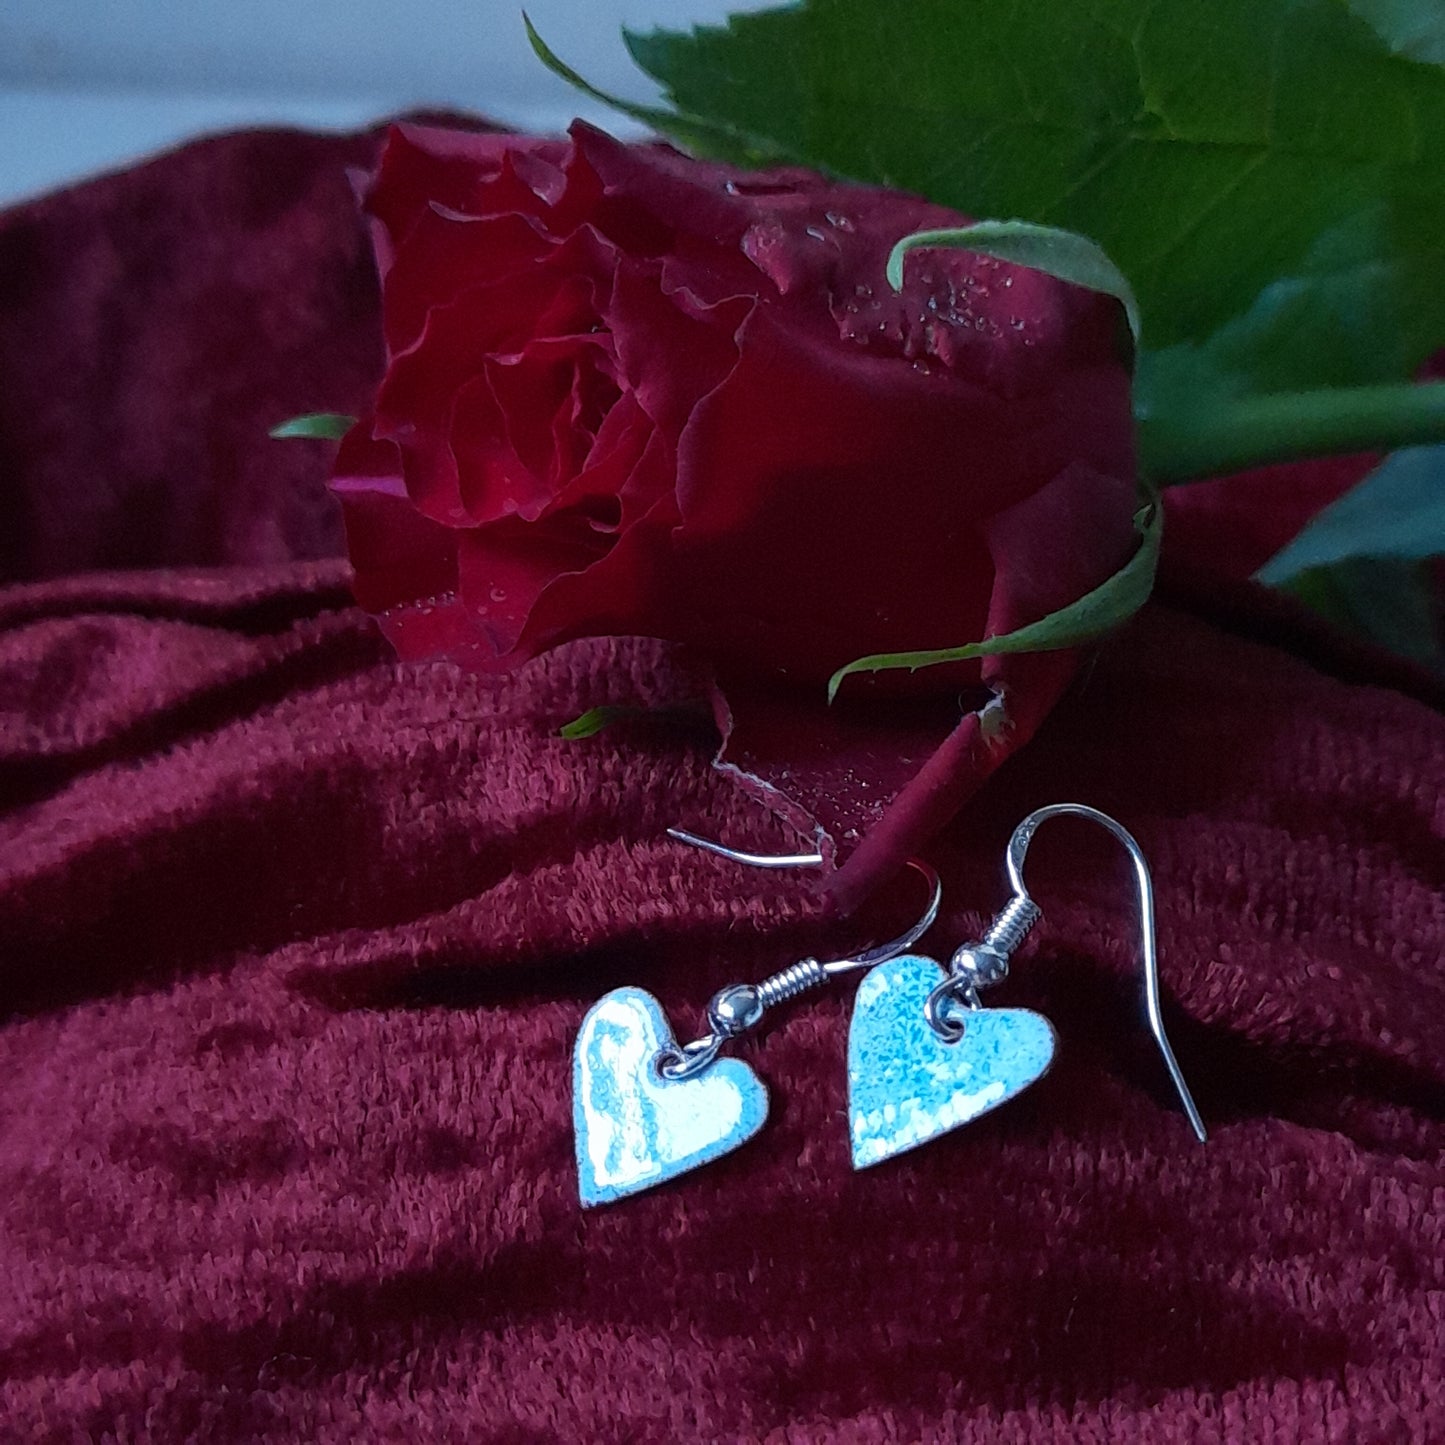 Heart Enamel Drop Earrings. Valentine Dangle Earrings. Colourful Heart Shaped Handmade Earrings